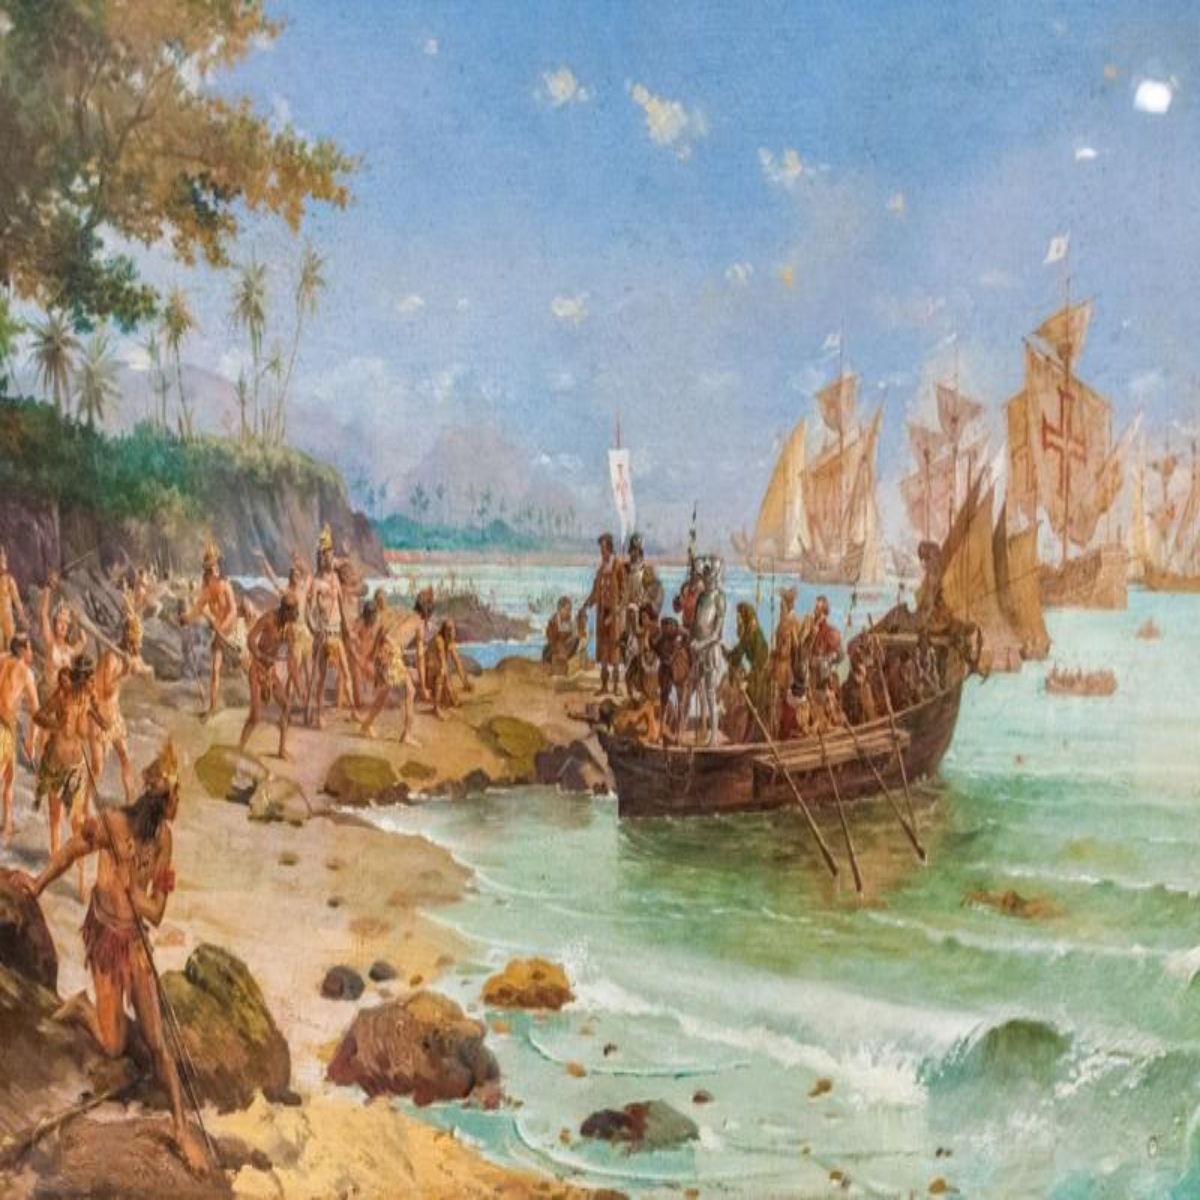  Atualmente a história indica que que o Descobrimento do Brasil aconteceu em 1500, na região de Porto Seguro (Foto: Domínio público) 